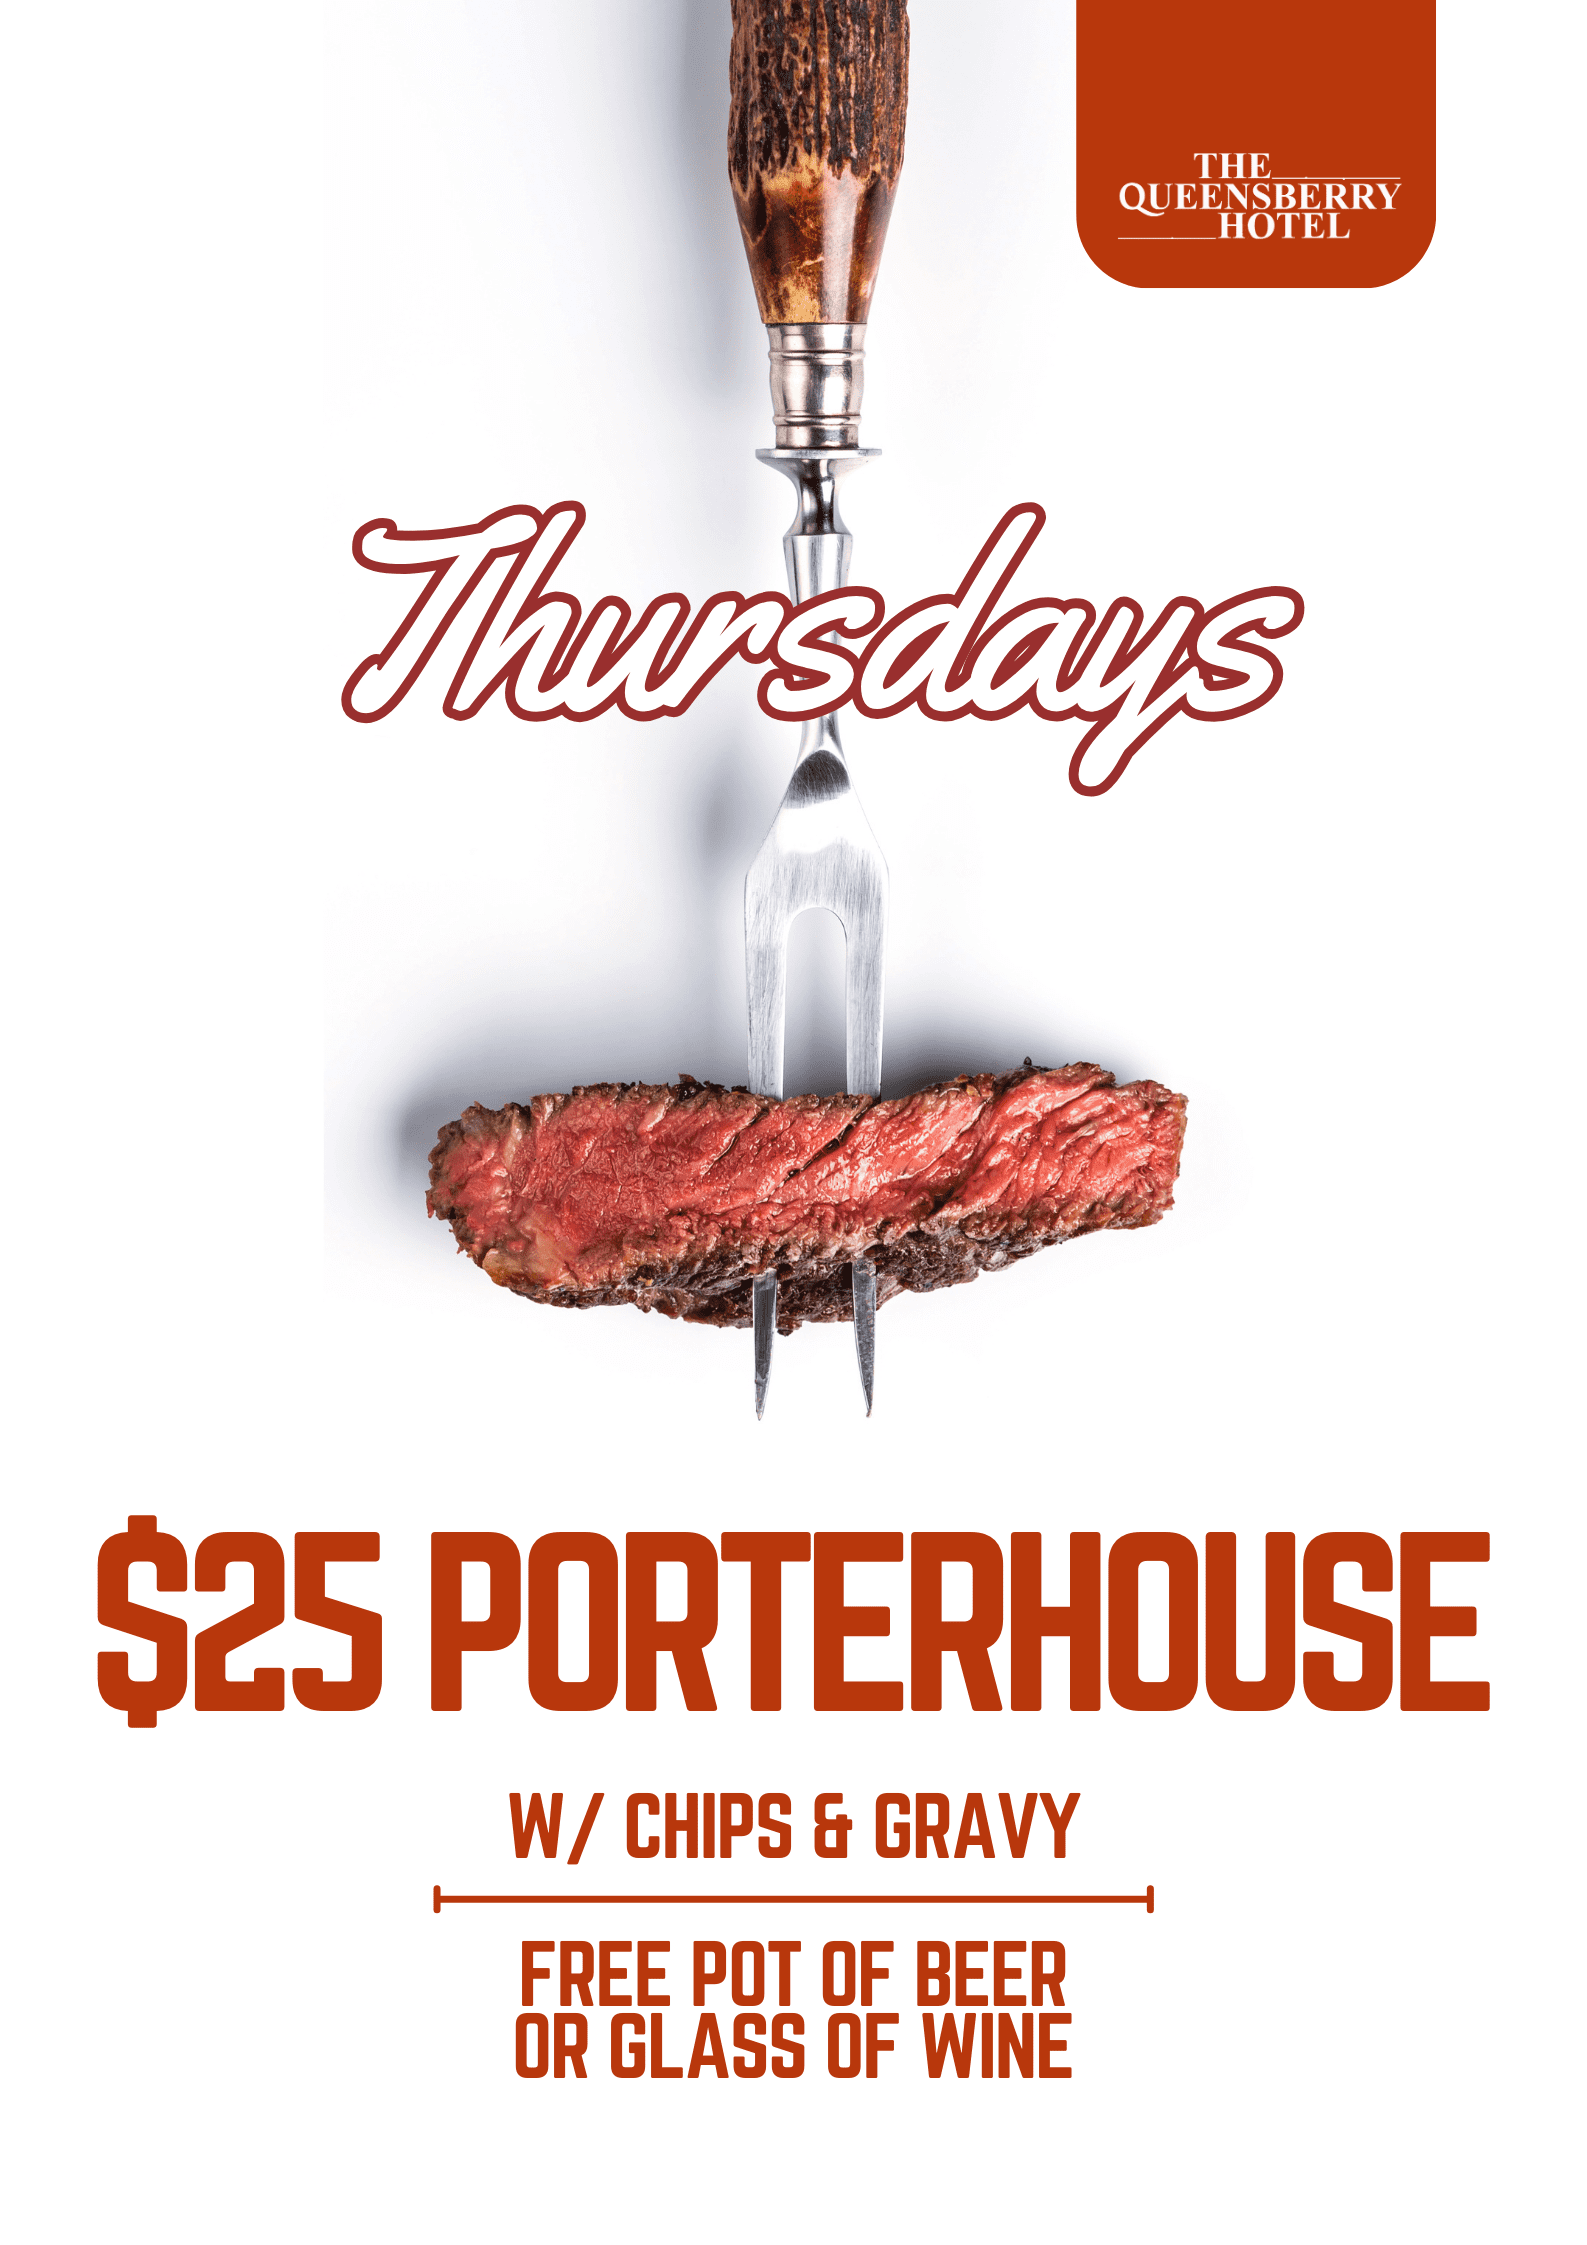 Thursday Special | $25 Porterhouse Steak